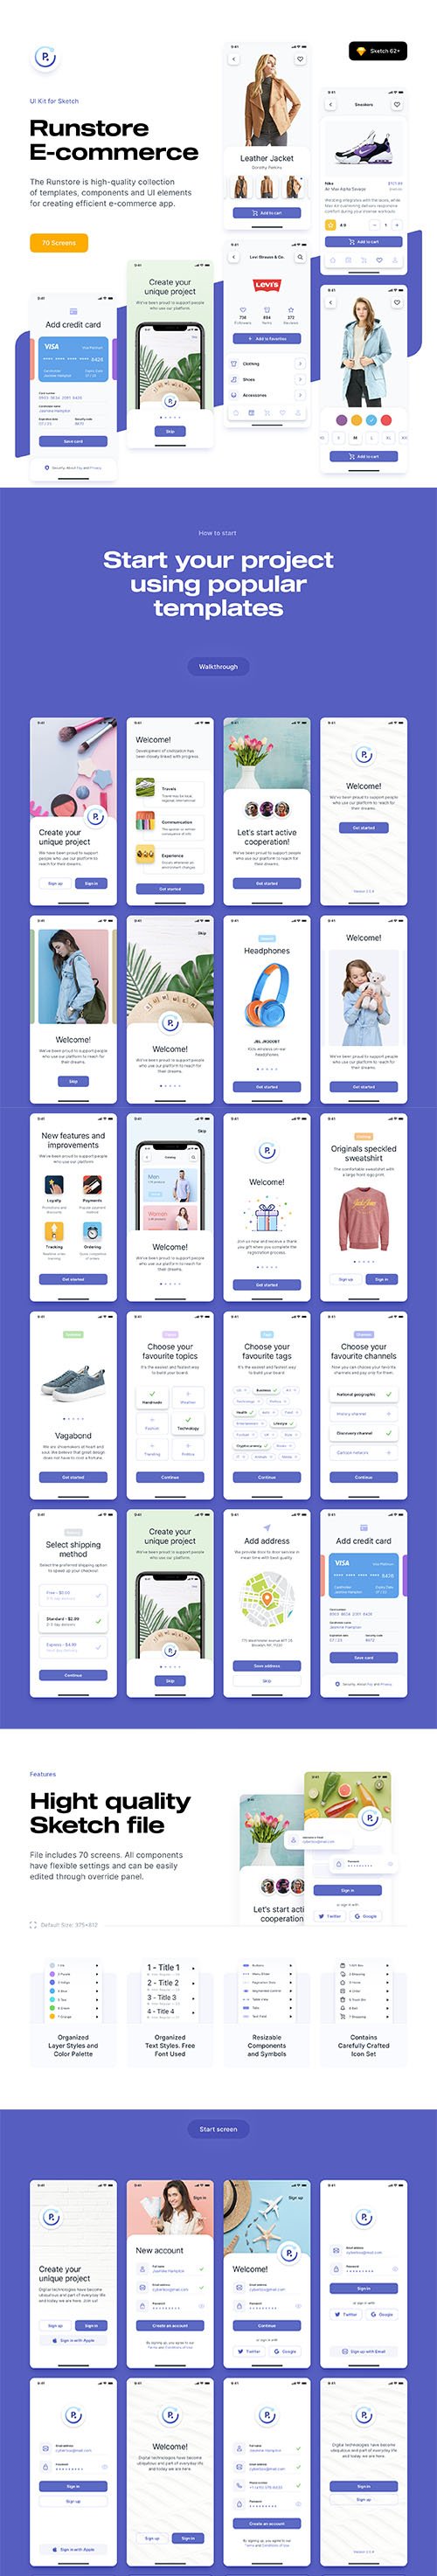 Runstore E-commerce UI Kit